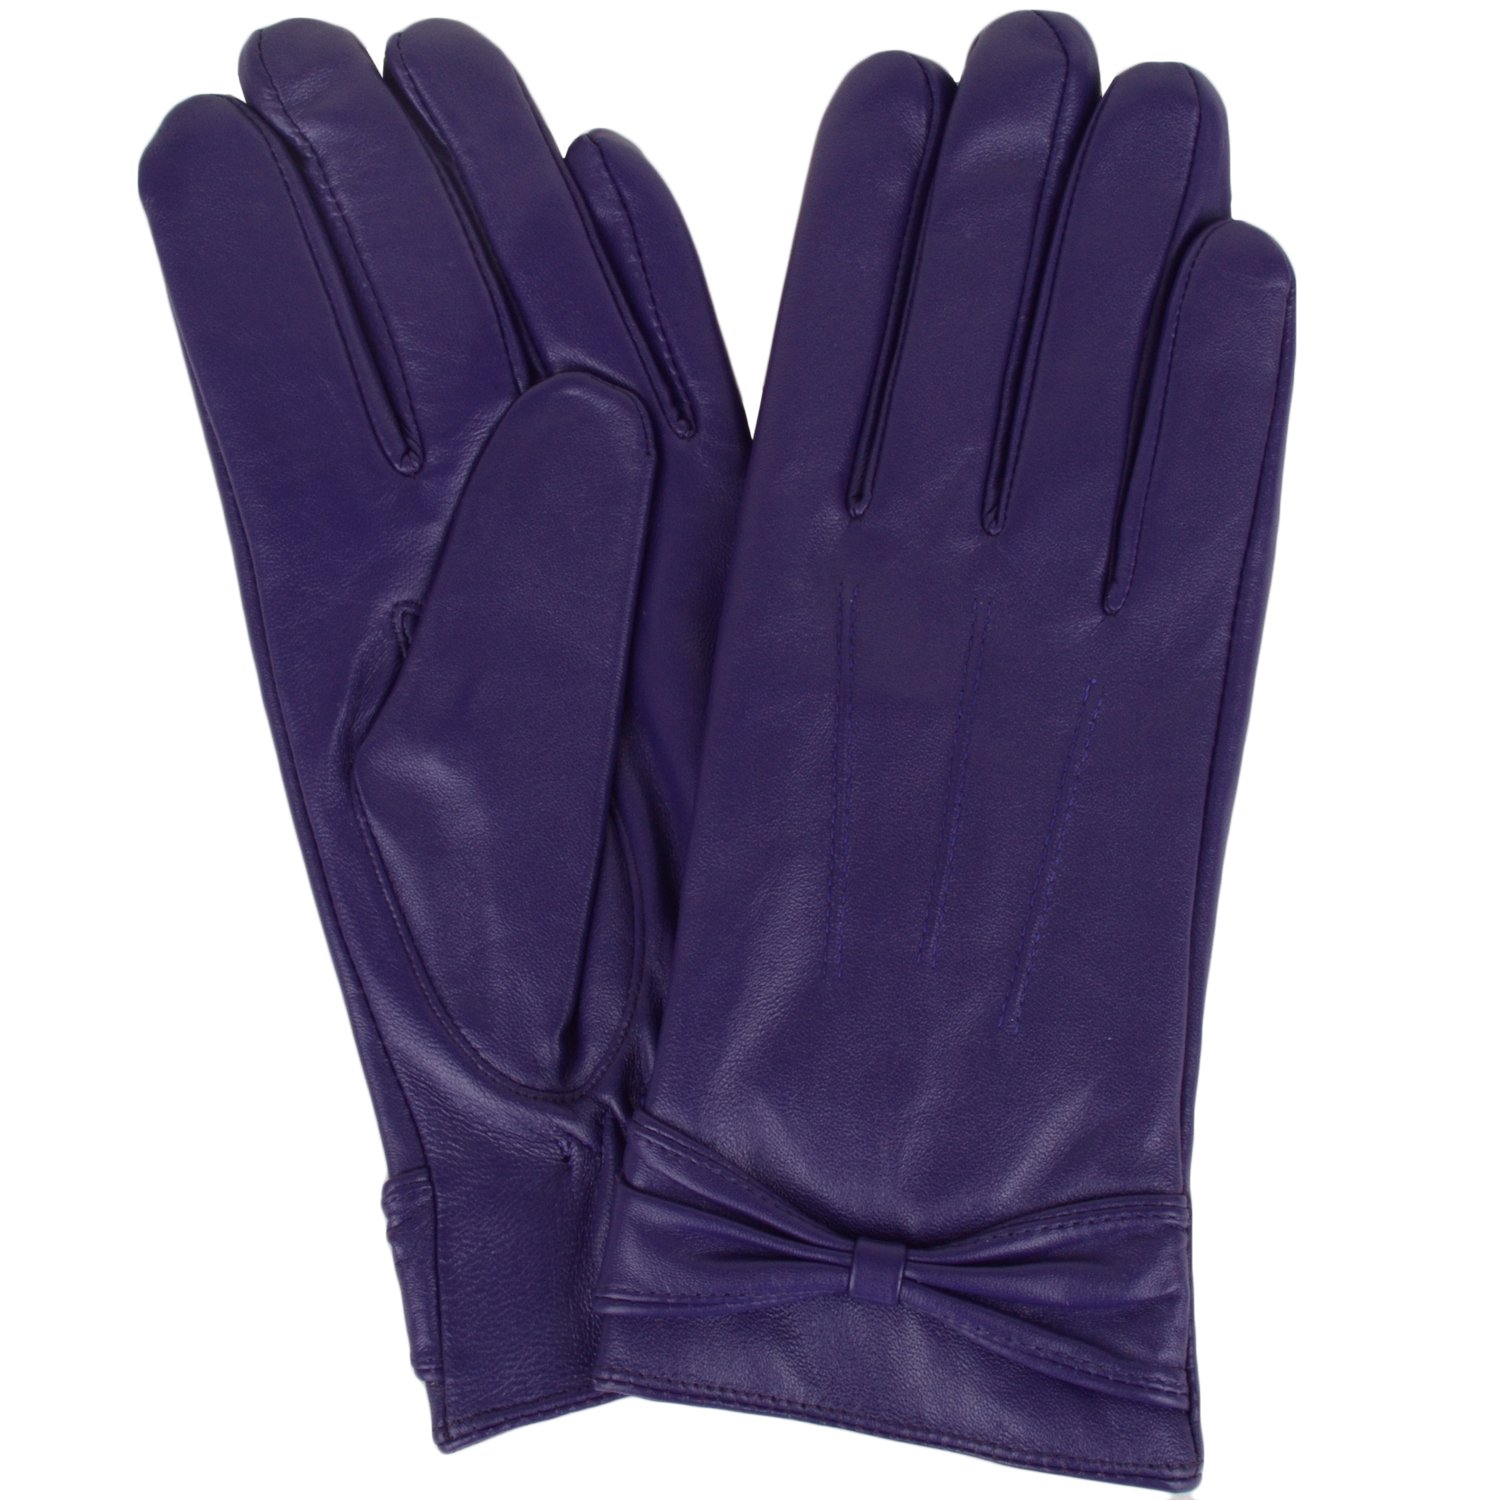 Snugrugs Damen Butter Soft Premium Leather Glove Handschuhe, (Purple Purple), (Herstellergröße: 7.5")